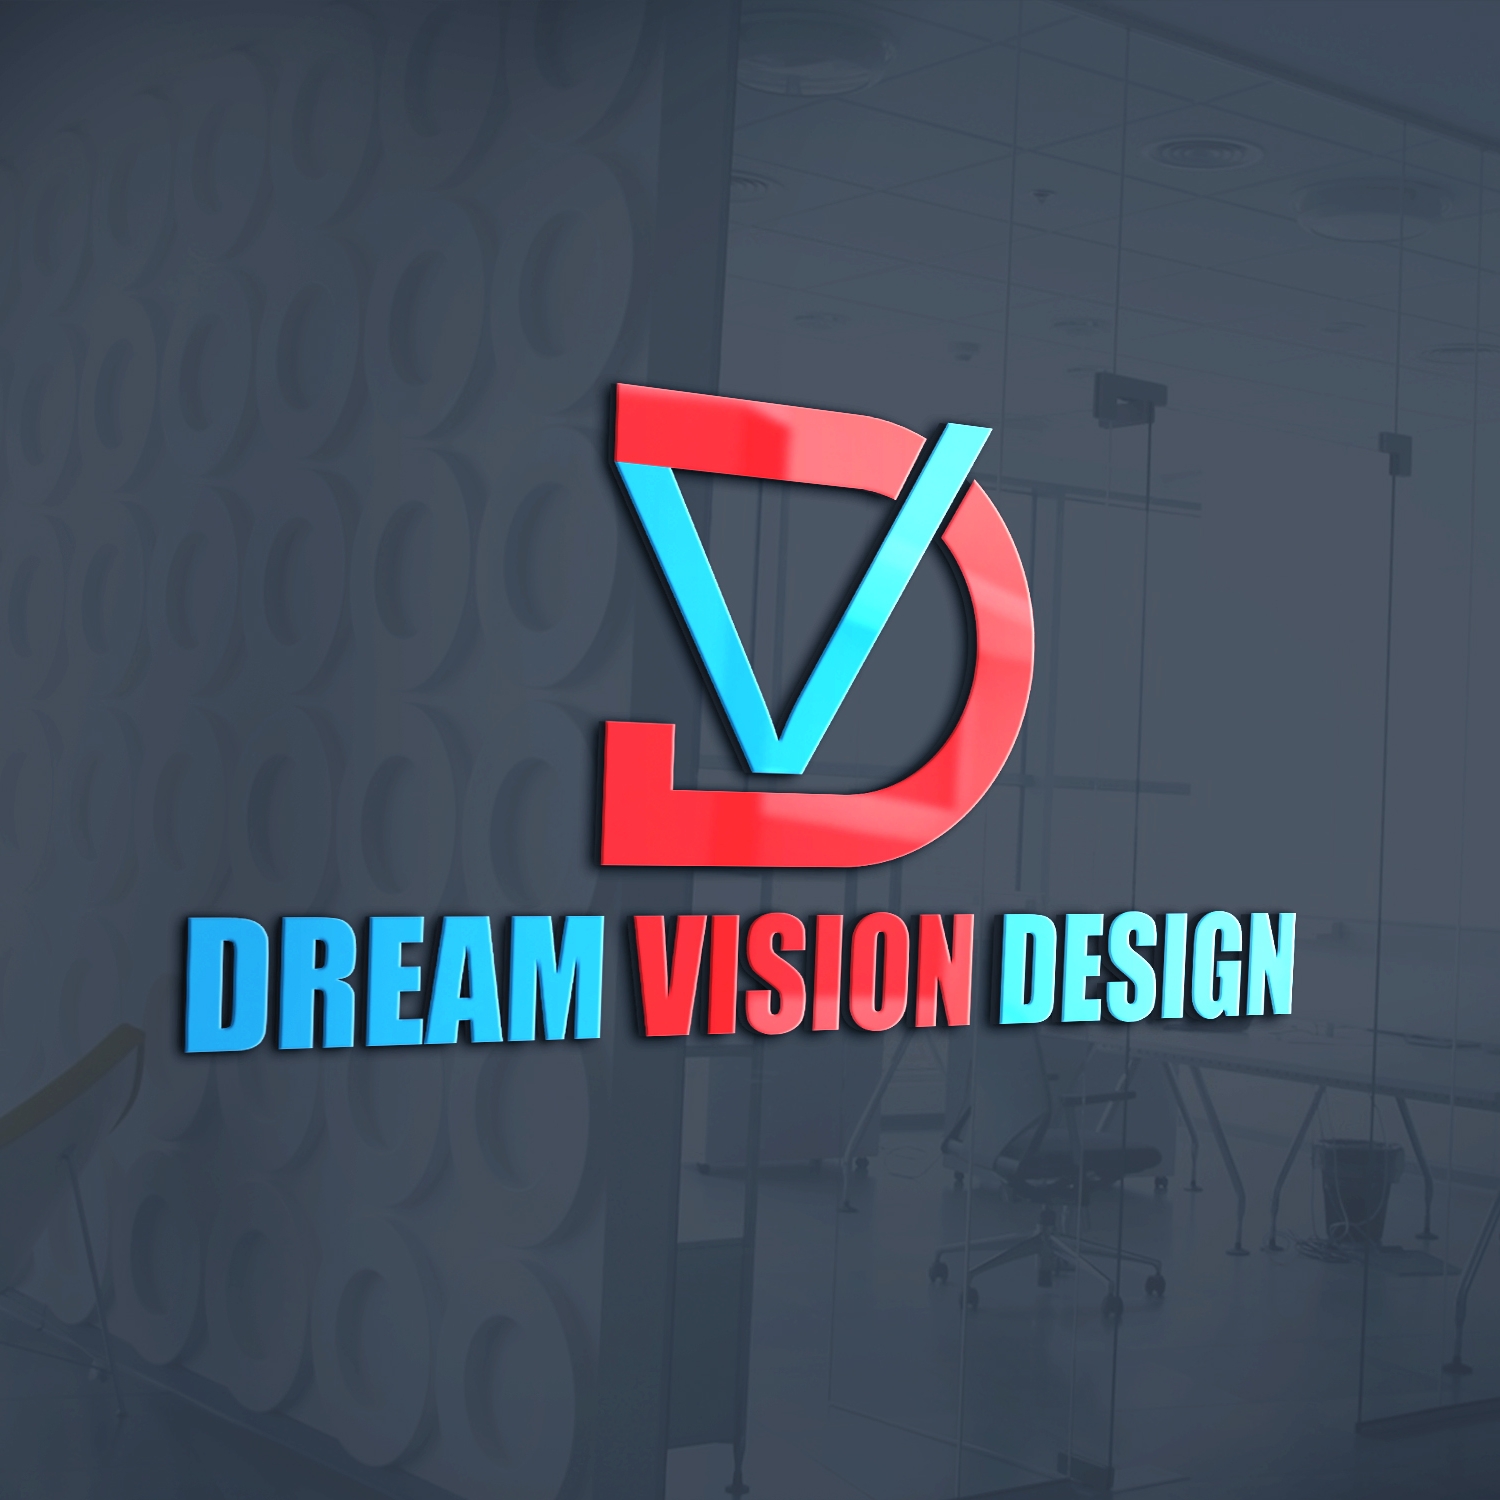 Dream Vision Design & Dream House Construction - Logo